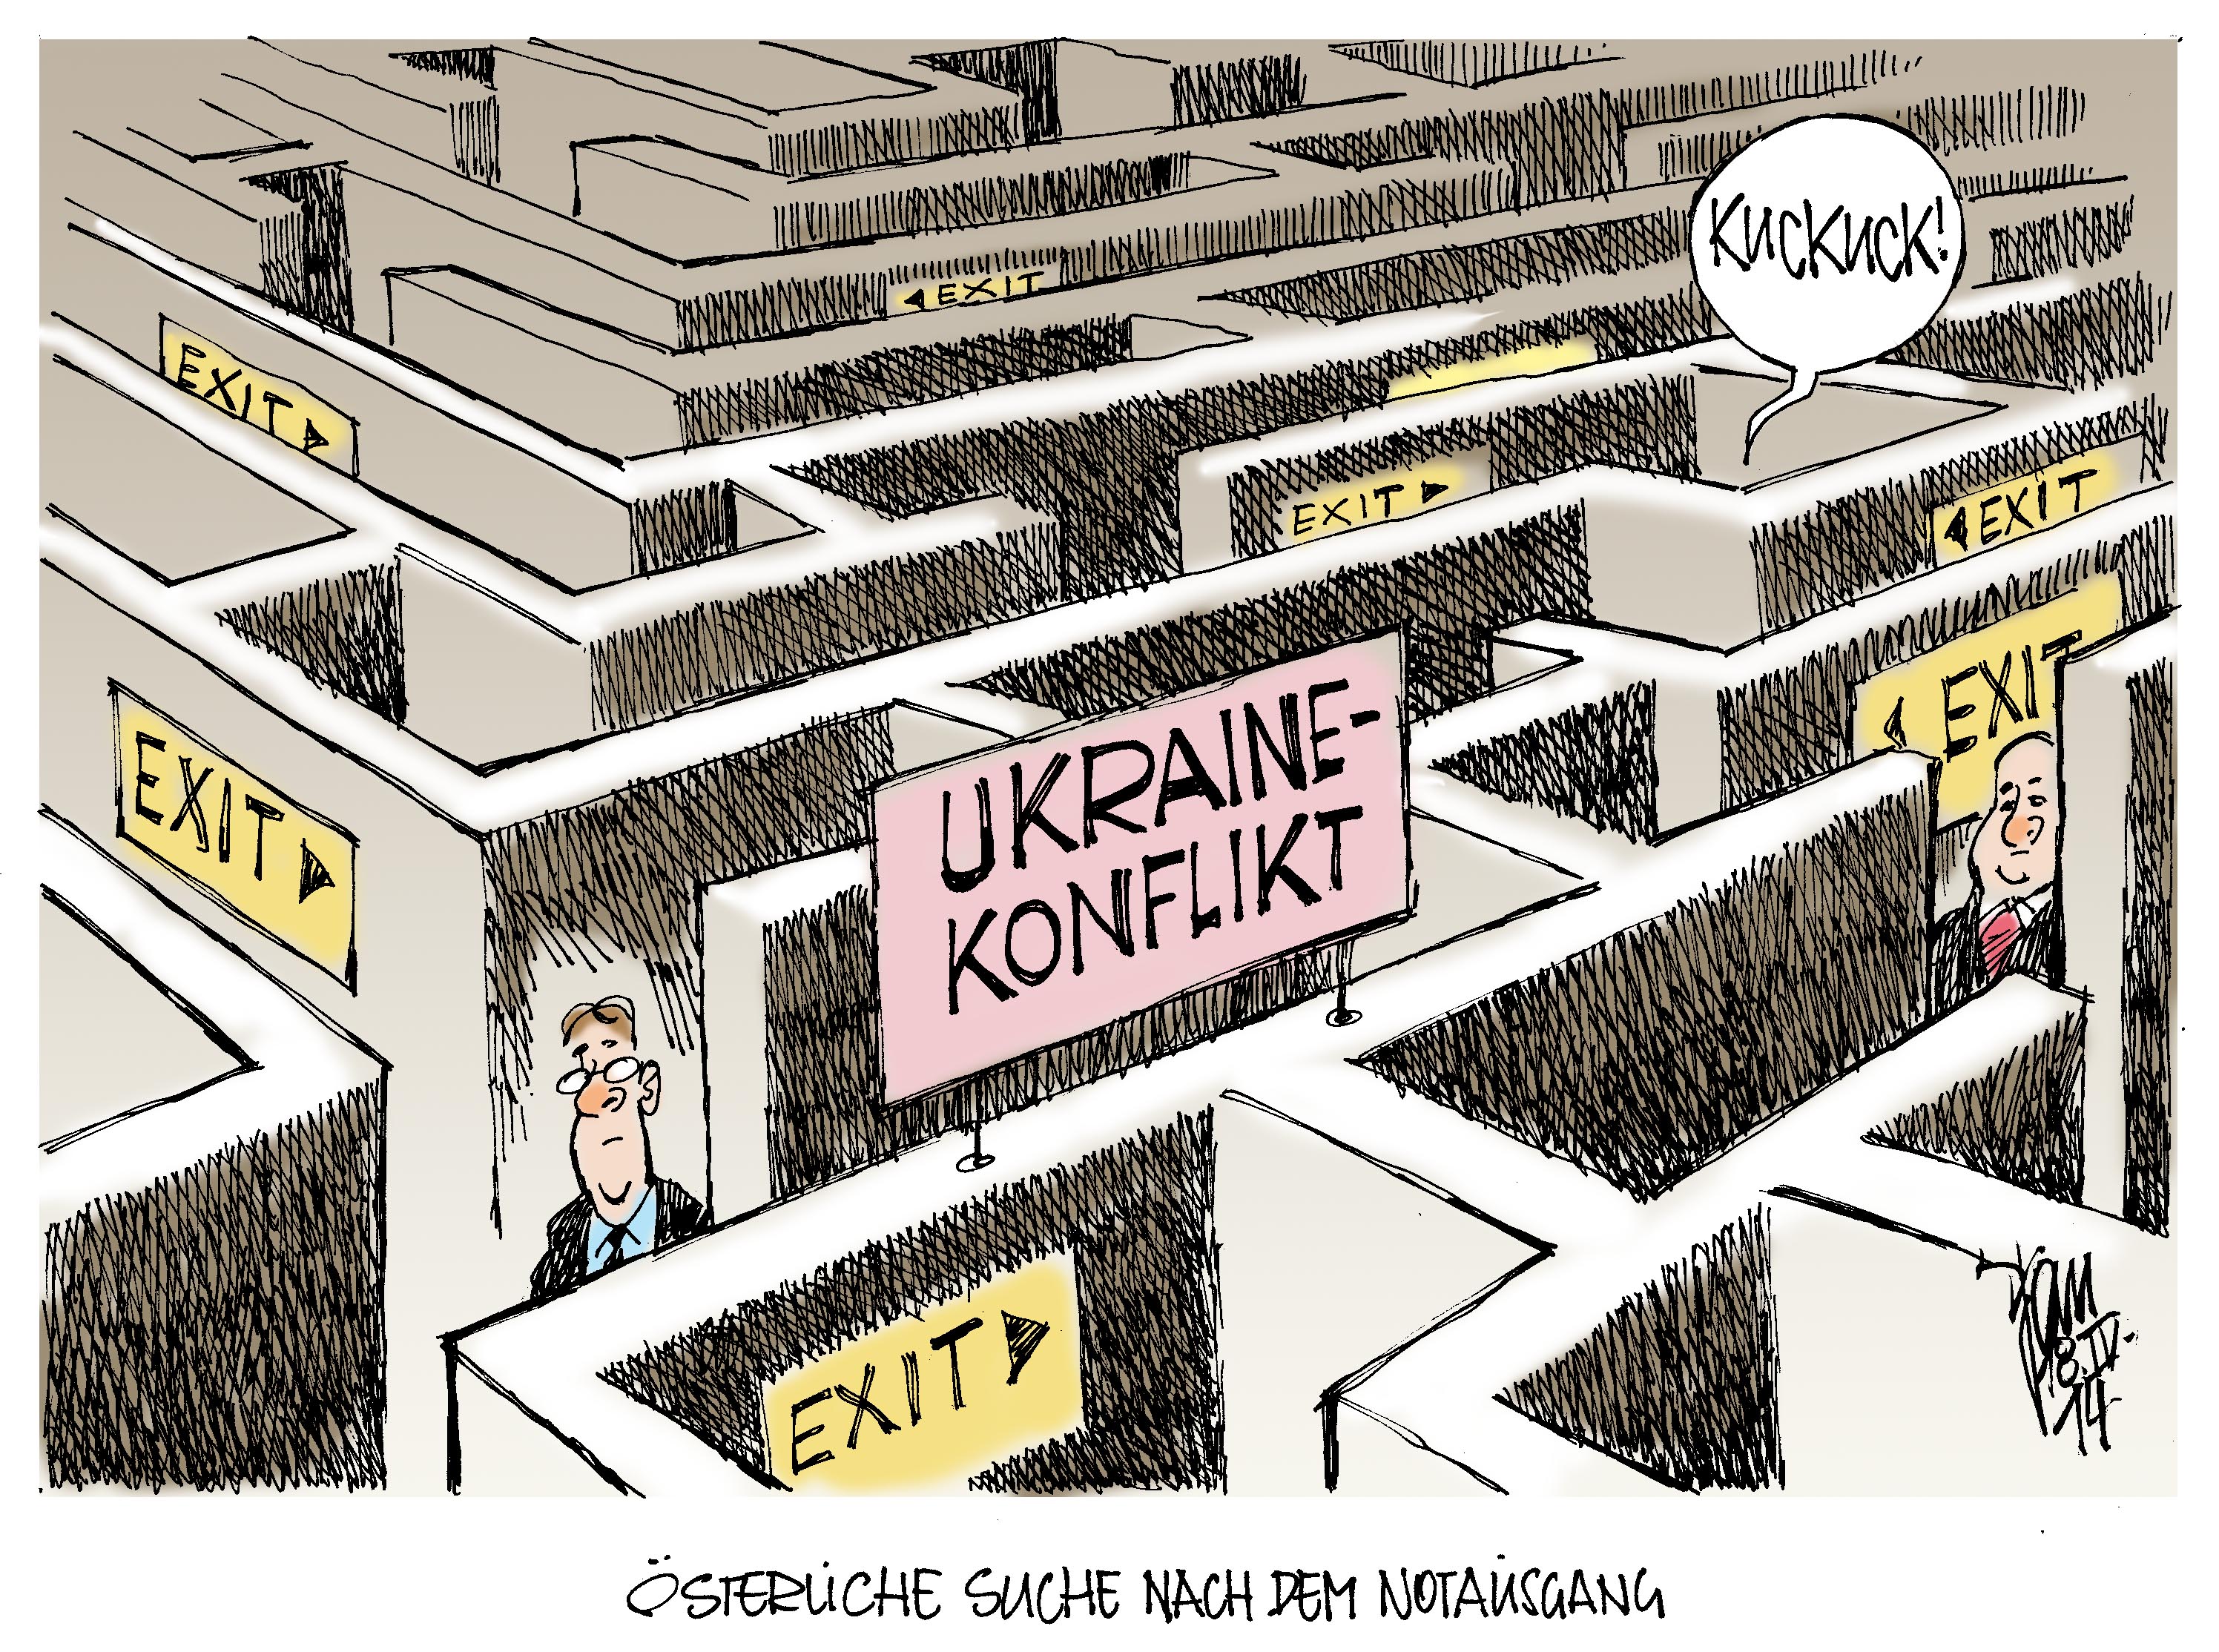 Ukraine-Konflikt Archives - Seite 3 von 3 - Janson-Karikatur